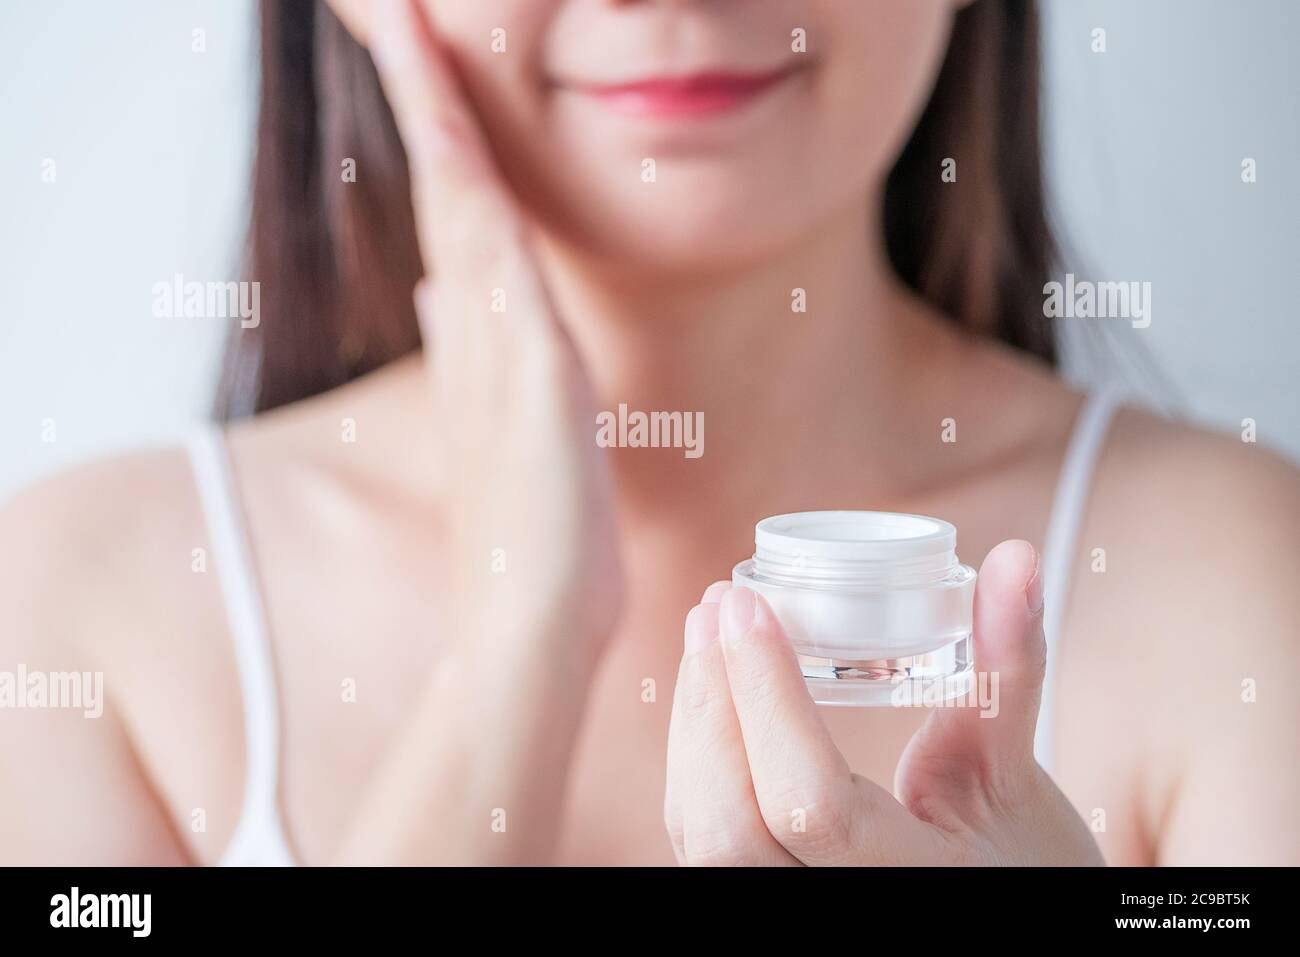 cosmétique pour soins de beauté, concept de traitement du visage. femme applique une lotion hydratante sur son visage à partir de l'emballage de crème cosmétique blanche de luxe Banque D'Images